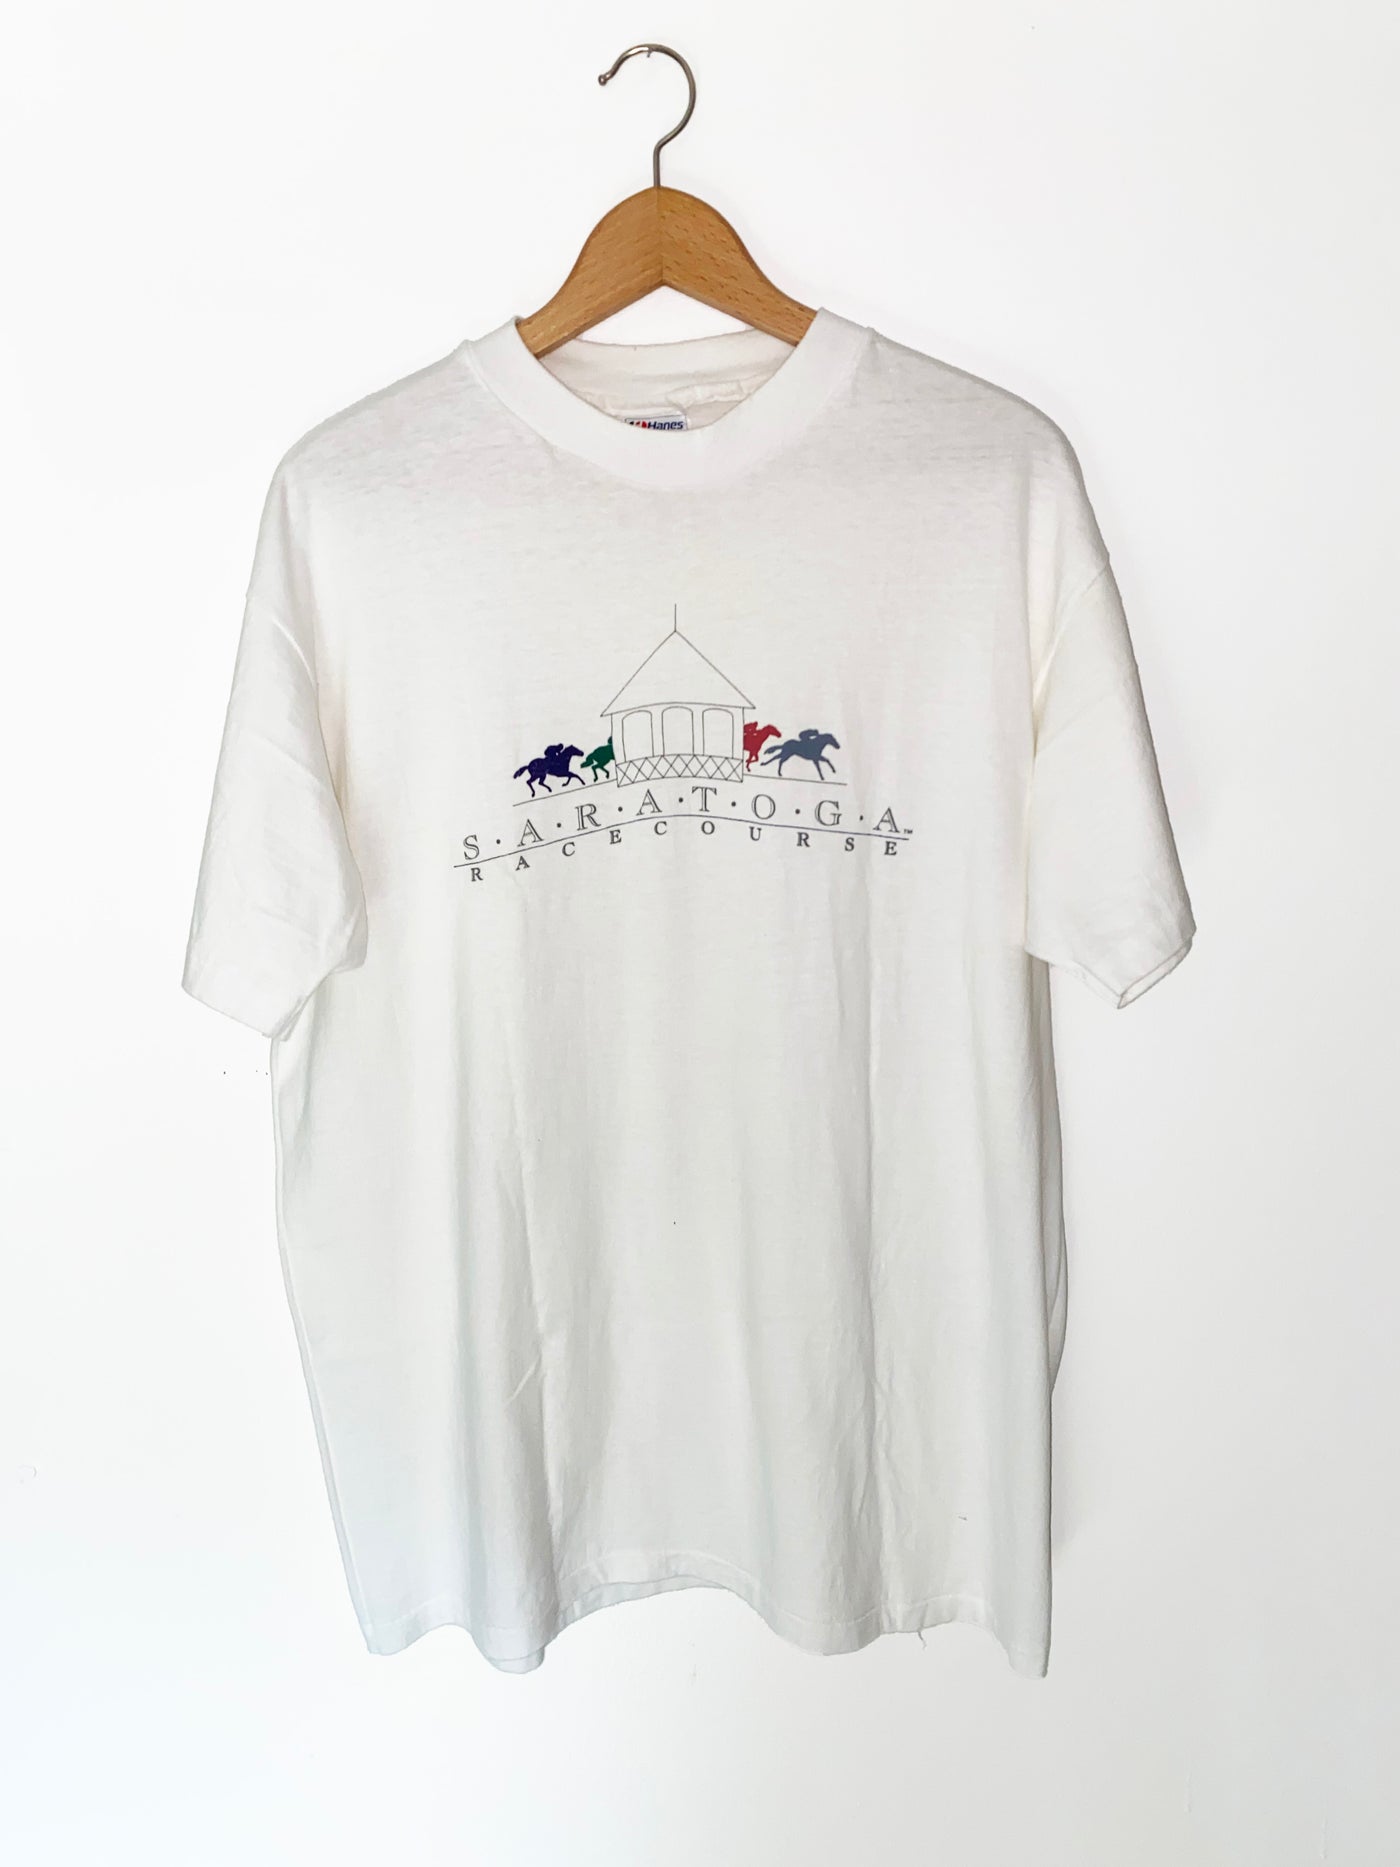 Vintage 90s Saratoga Race Course T-Shirt